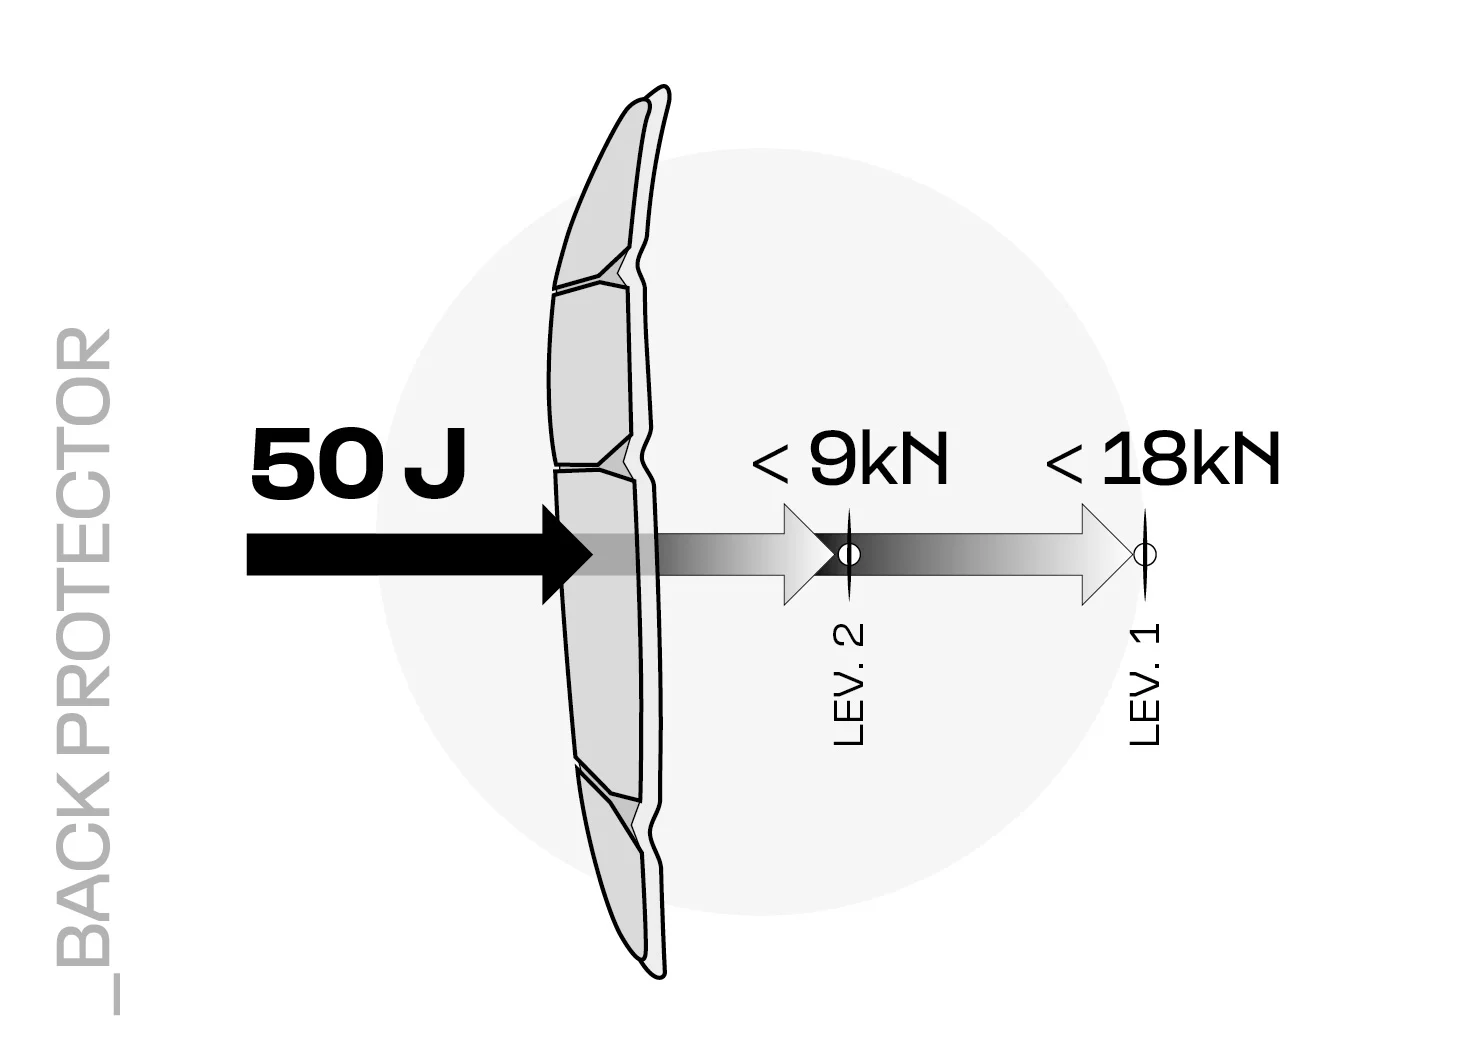 Illustration de l'absorption de la force d'une protection dorsale de niveau 1 et de niveau 2